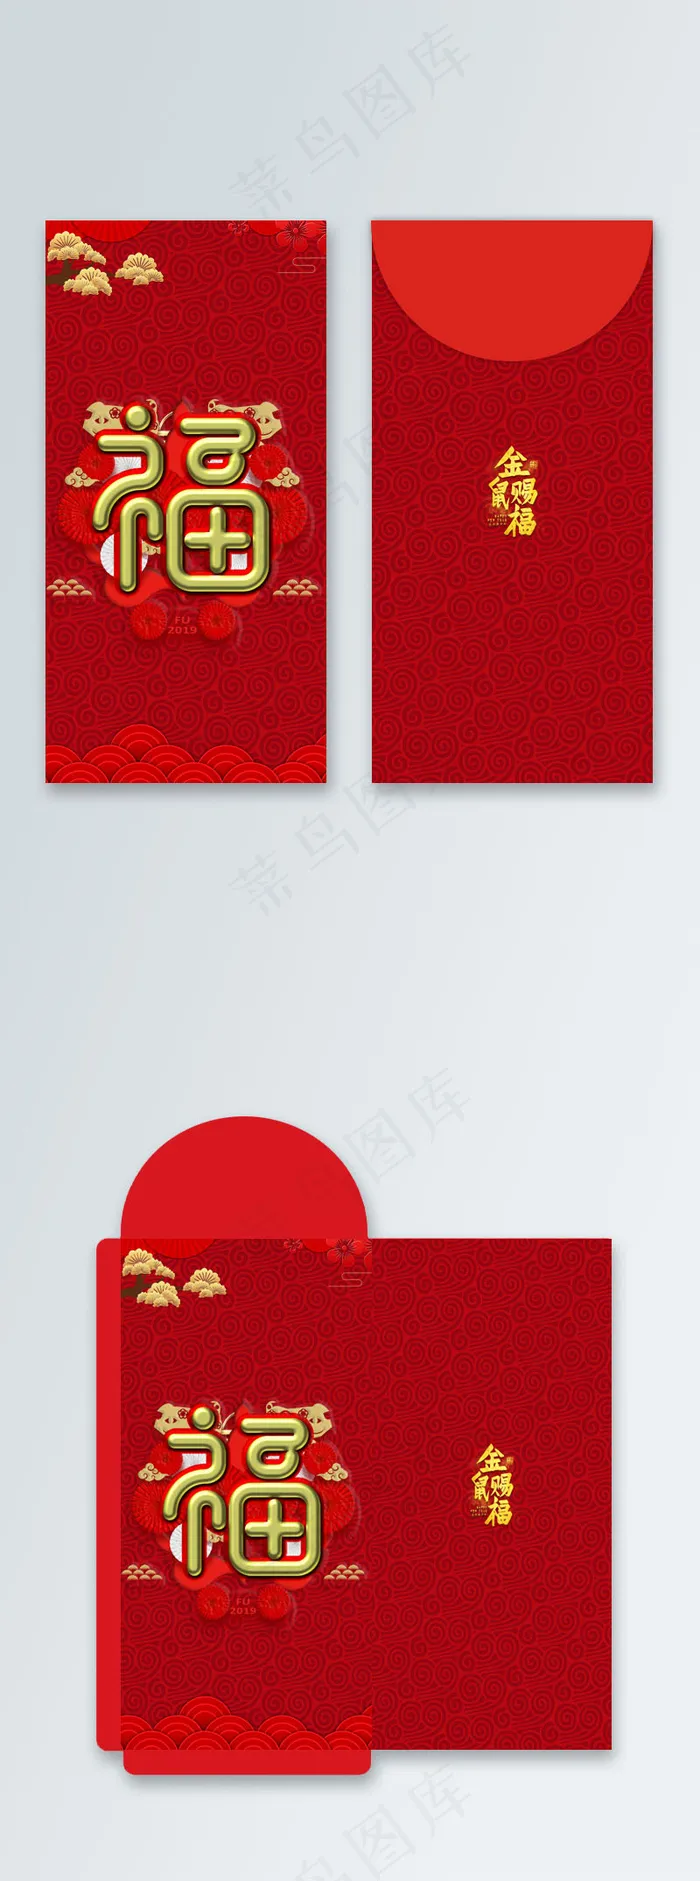 原创 新年 红包 包装 设计 喜庆 红色 福气